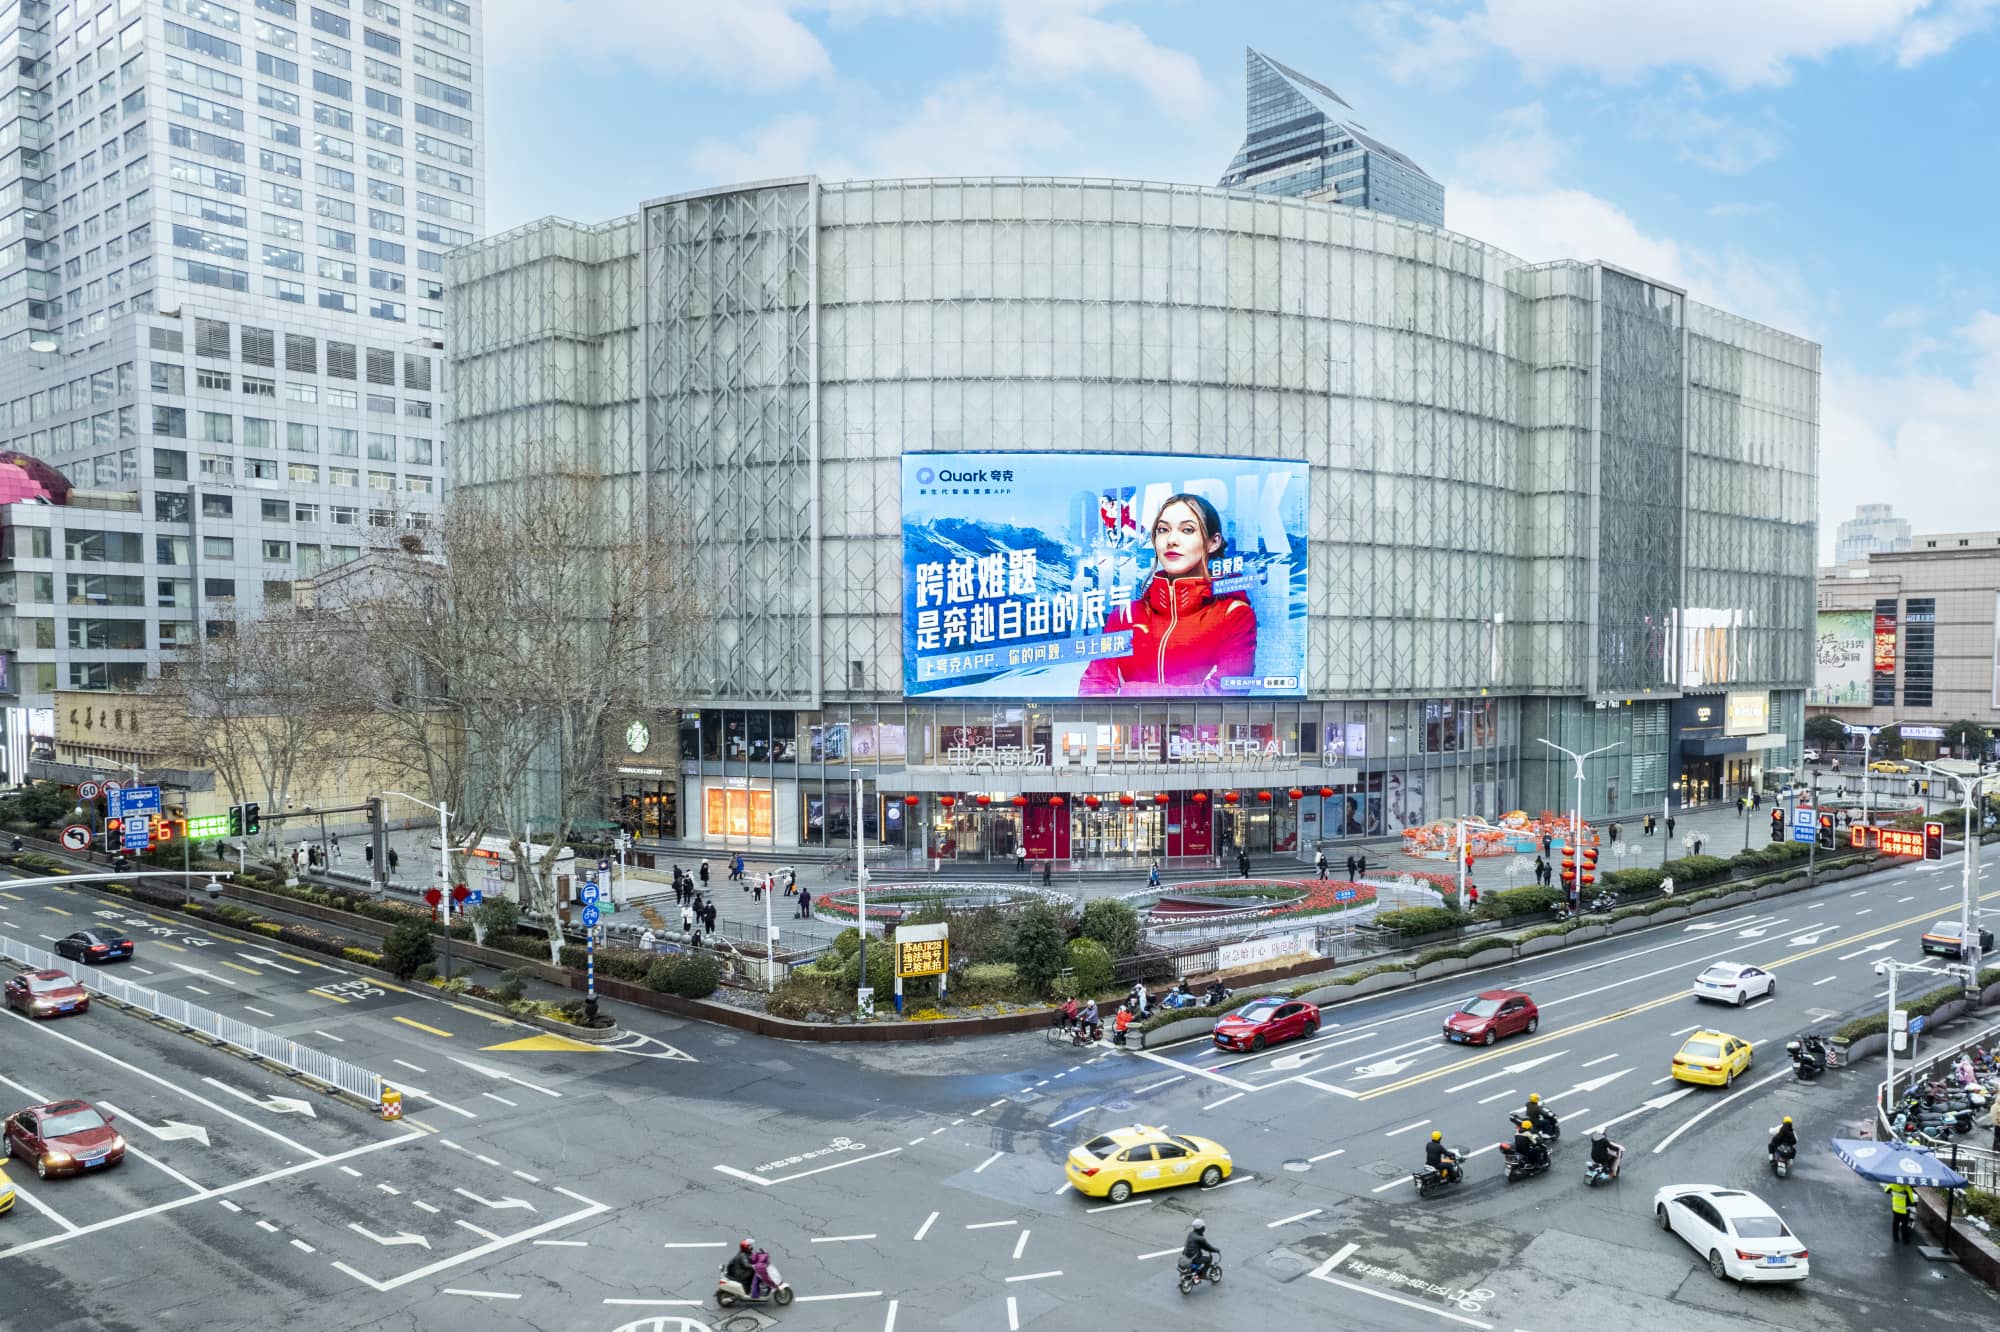 夸克app广告投放中央商场LED大屏-白天效果图1